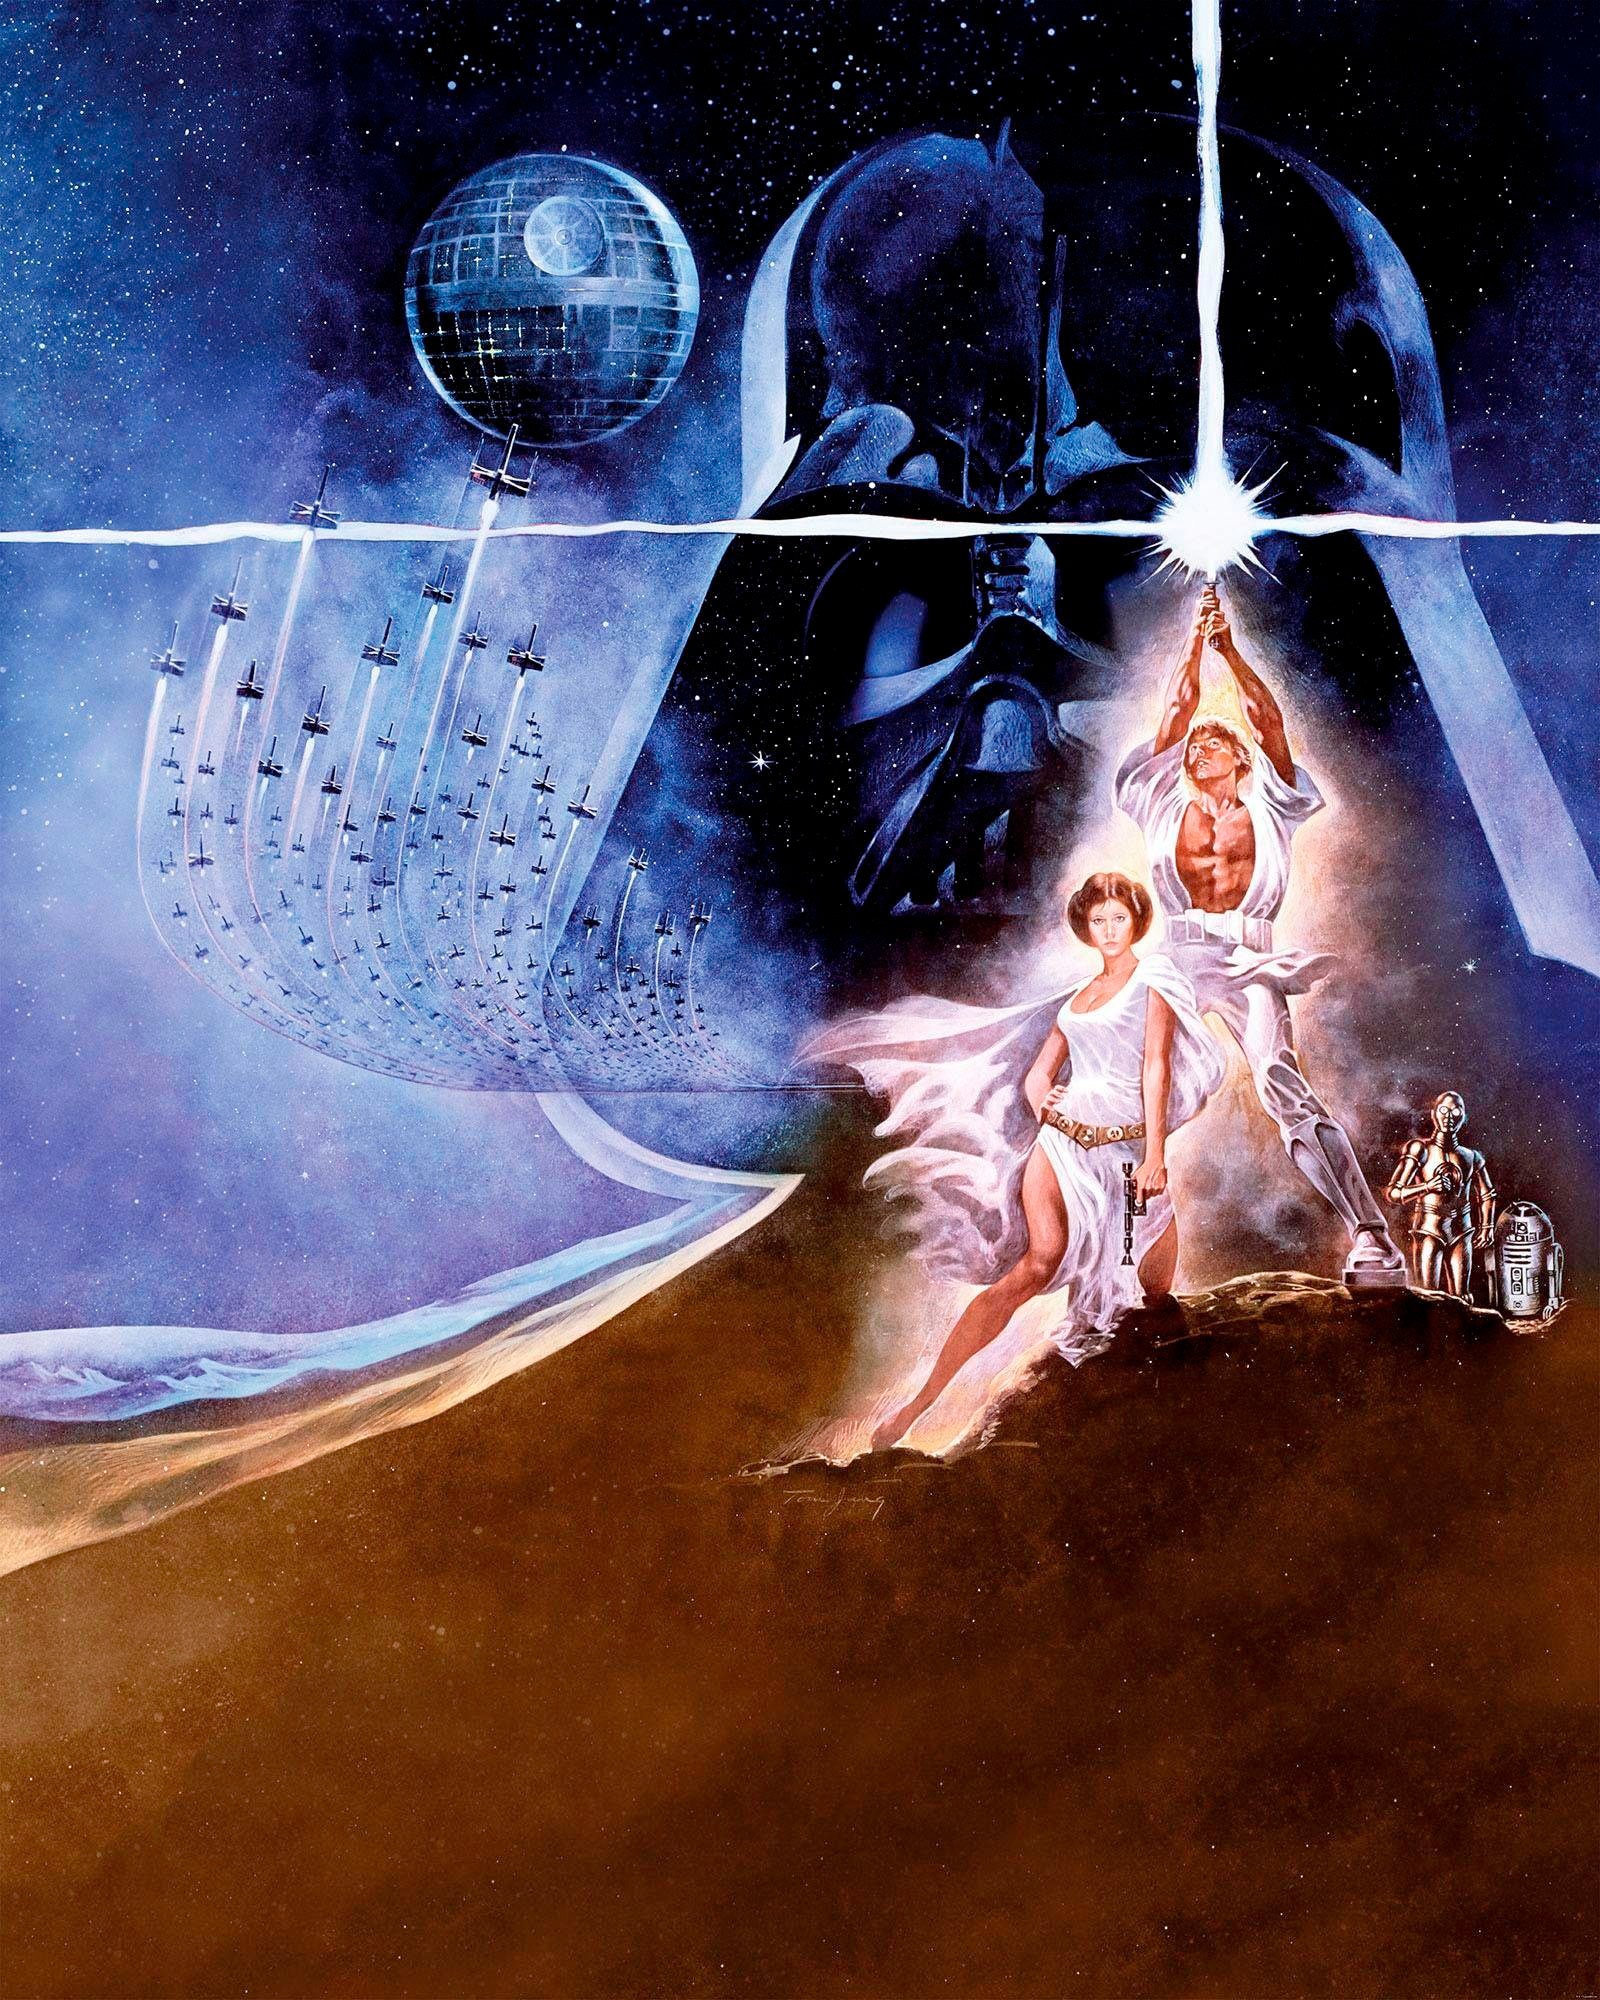 Komar Vliestapete "Star Wars Poster Classic2", 200x250 cm (Breite x Höhe), Vliestapete, 100 cm Bahnbreite